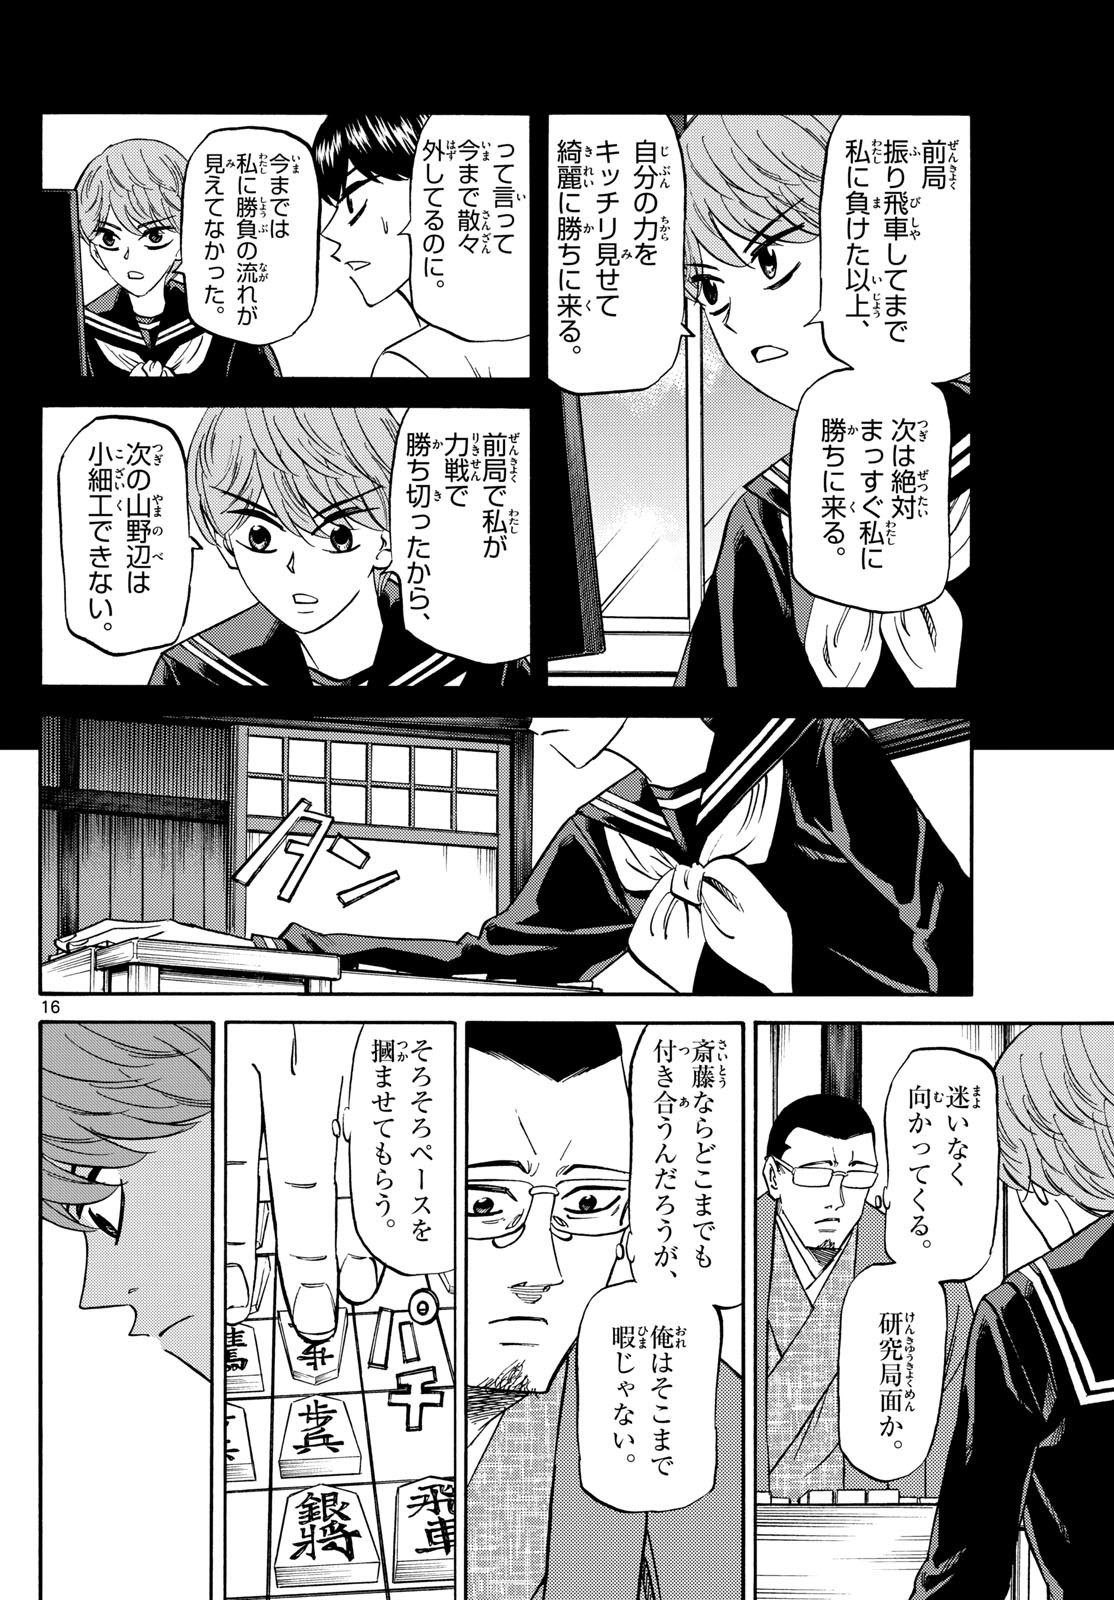 Ryu-to-Ichigo - Chapter 165 - Page 16